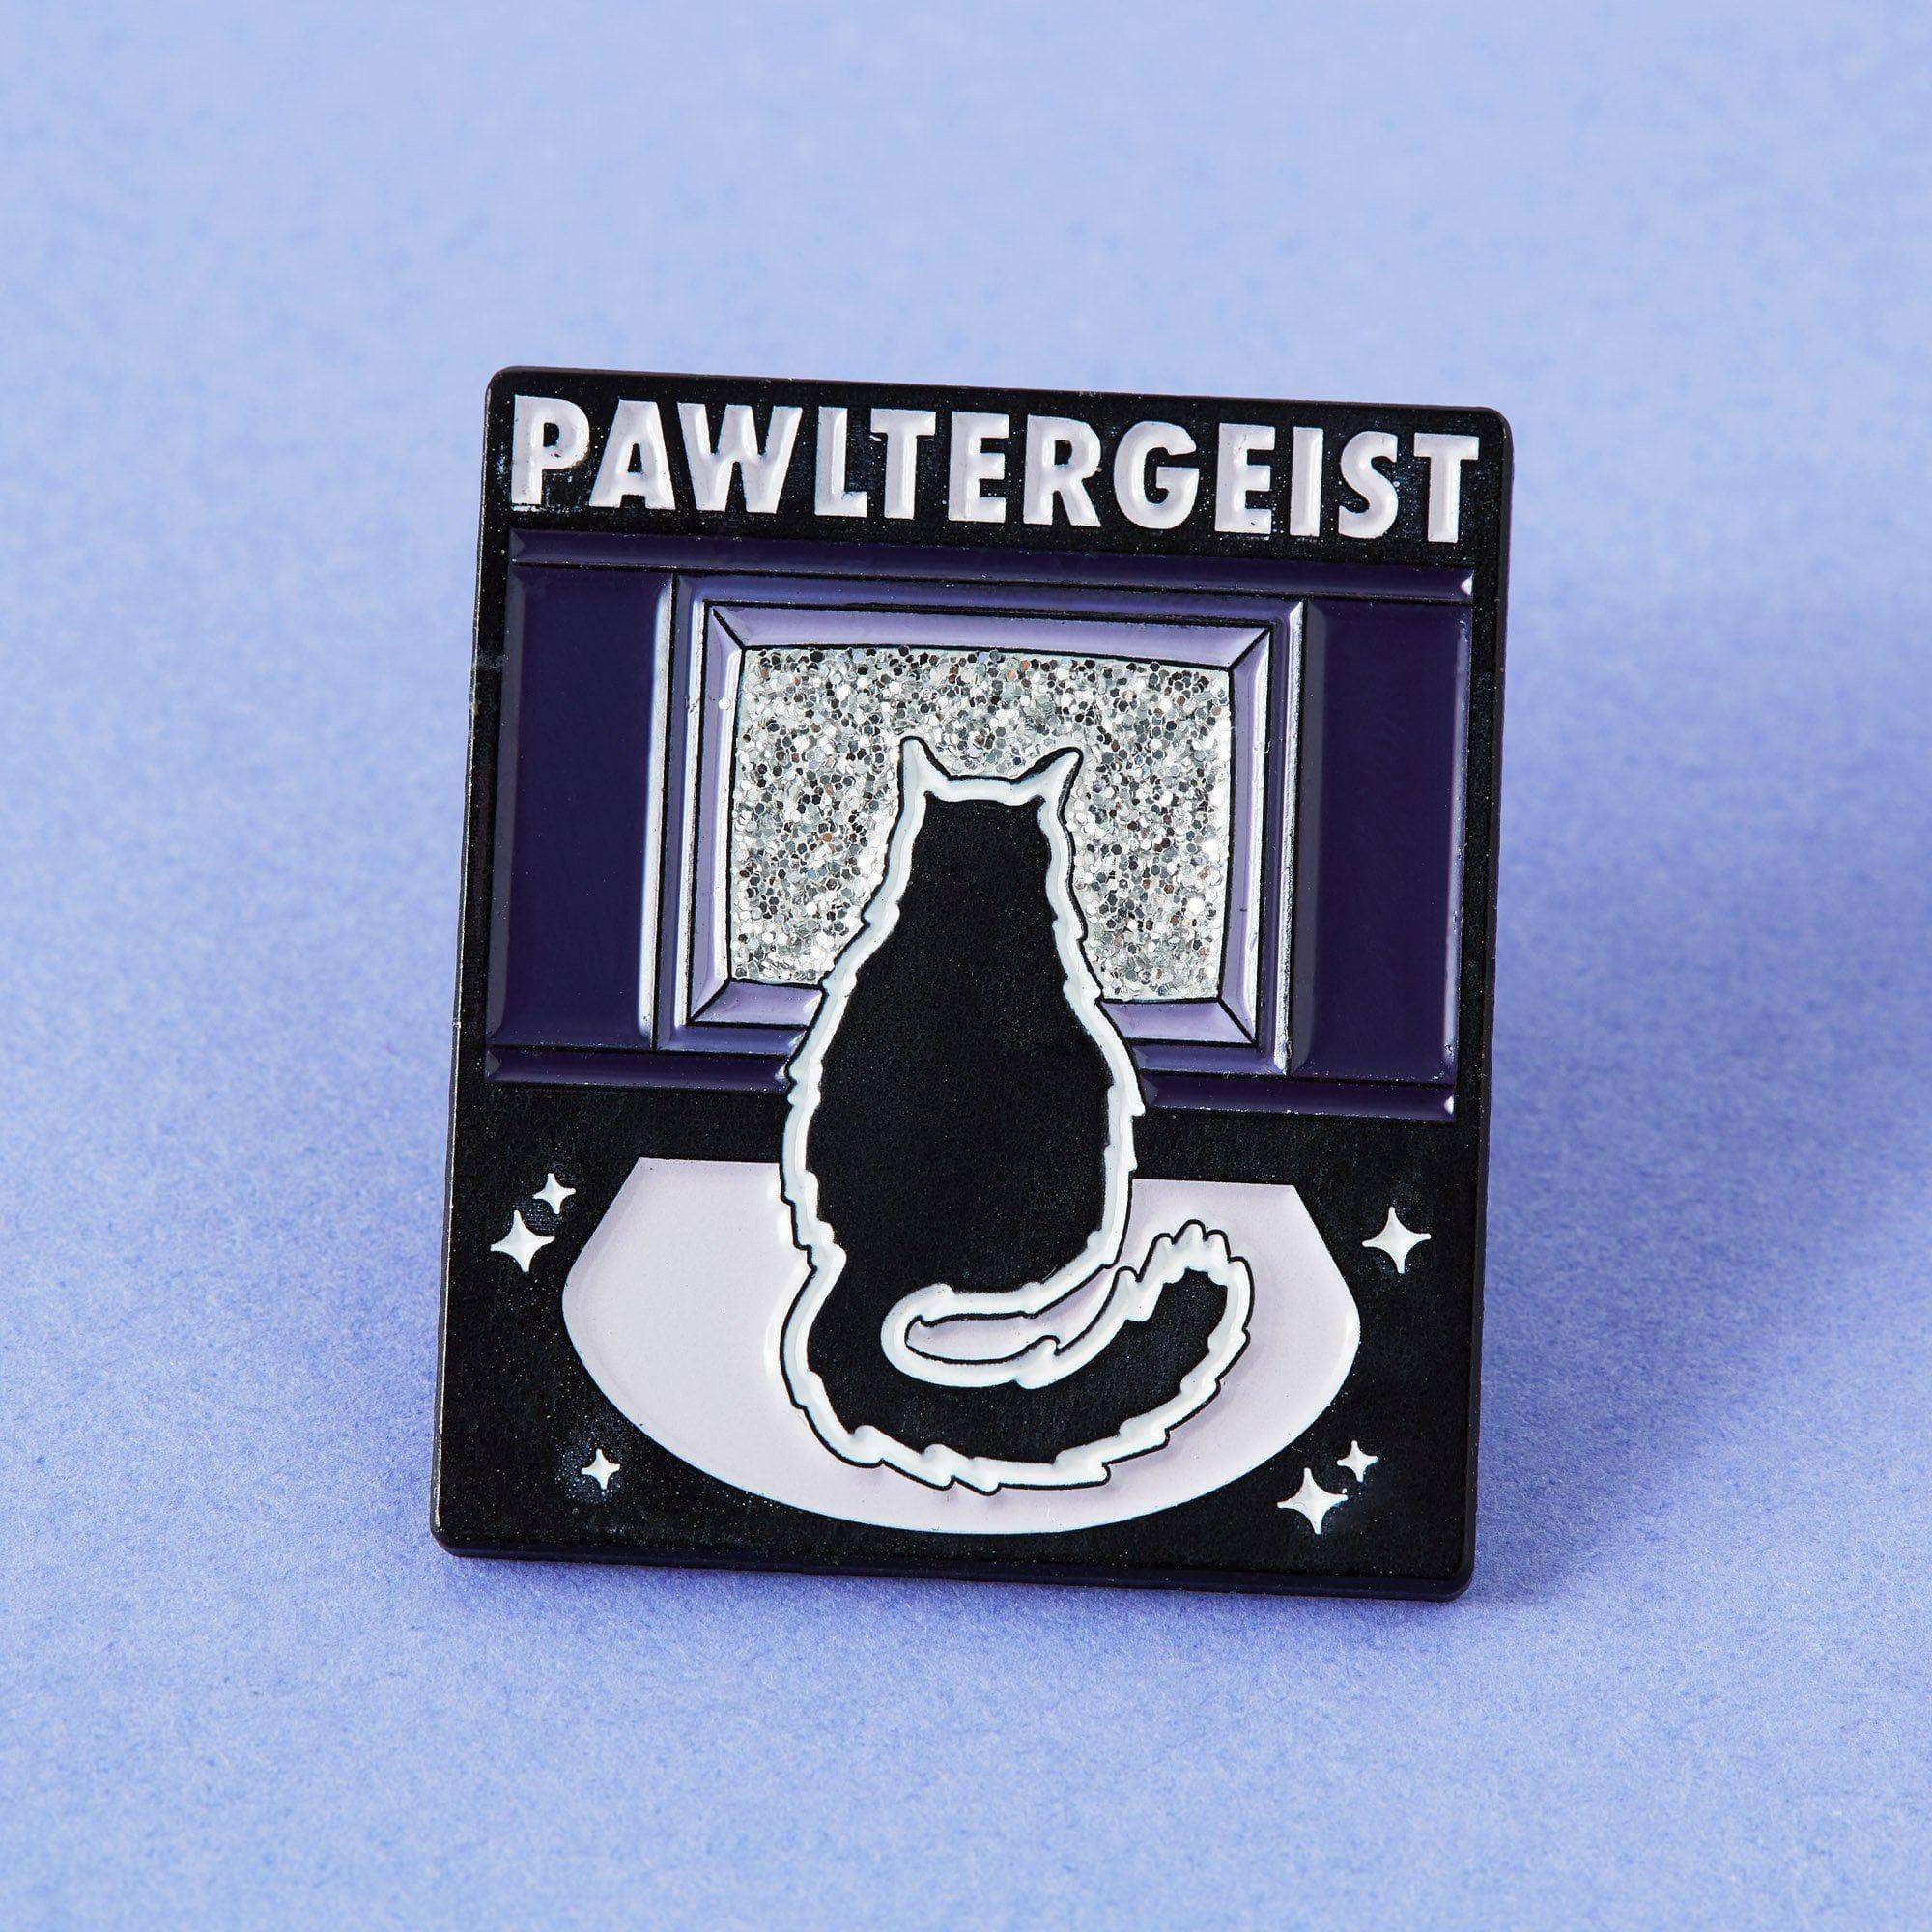 Pawltergeist Enamel Pin - Pin